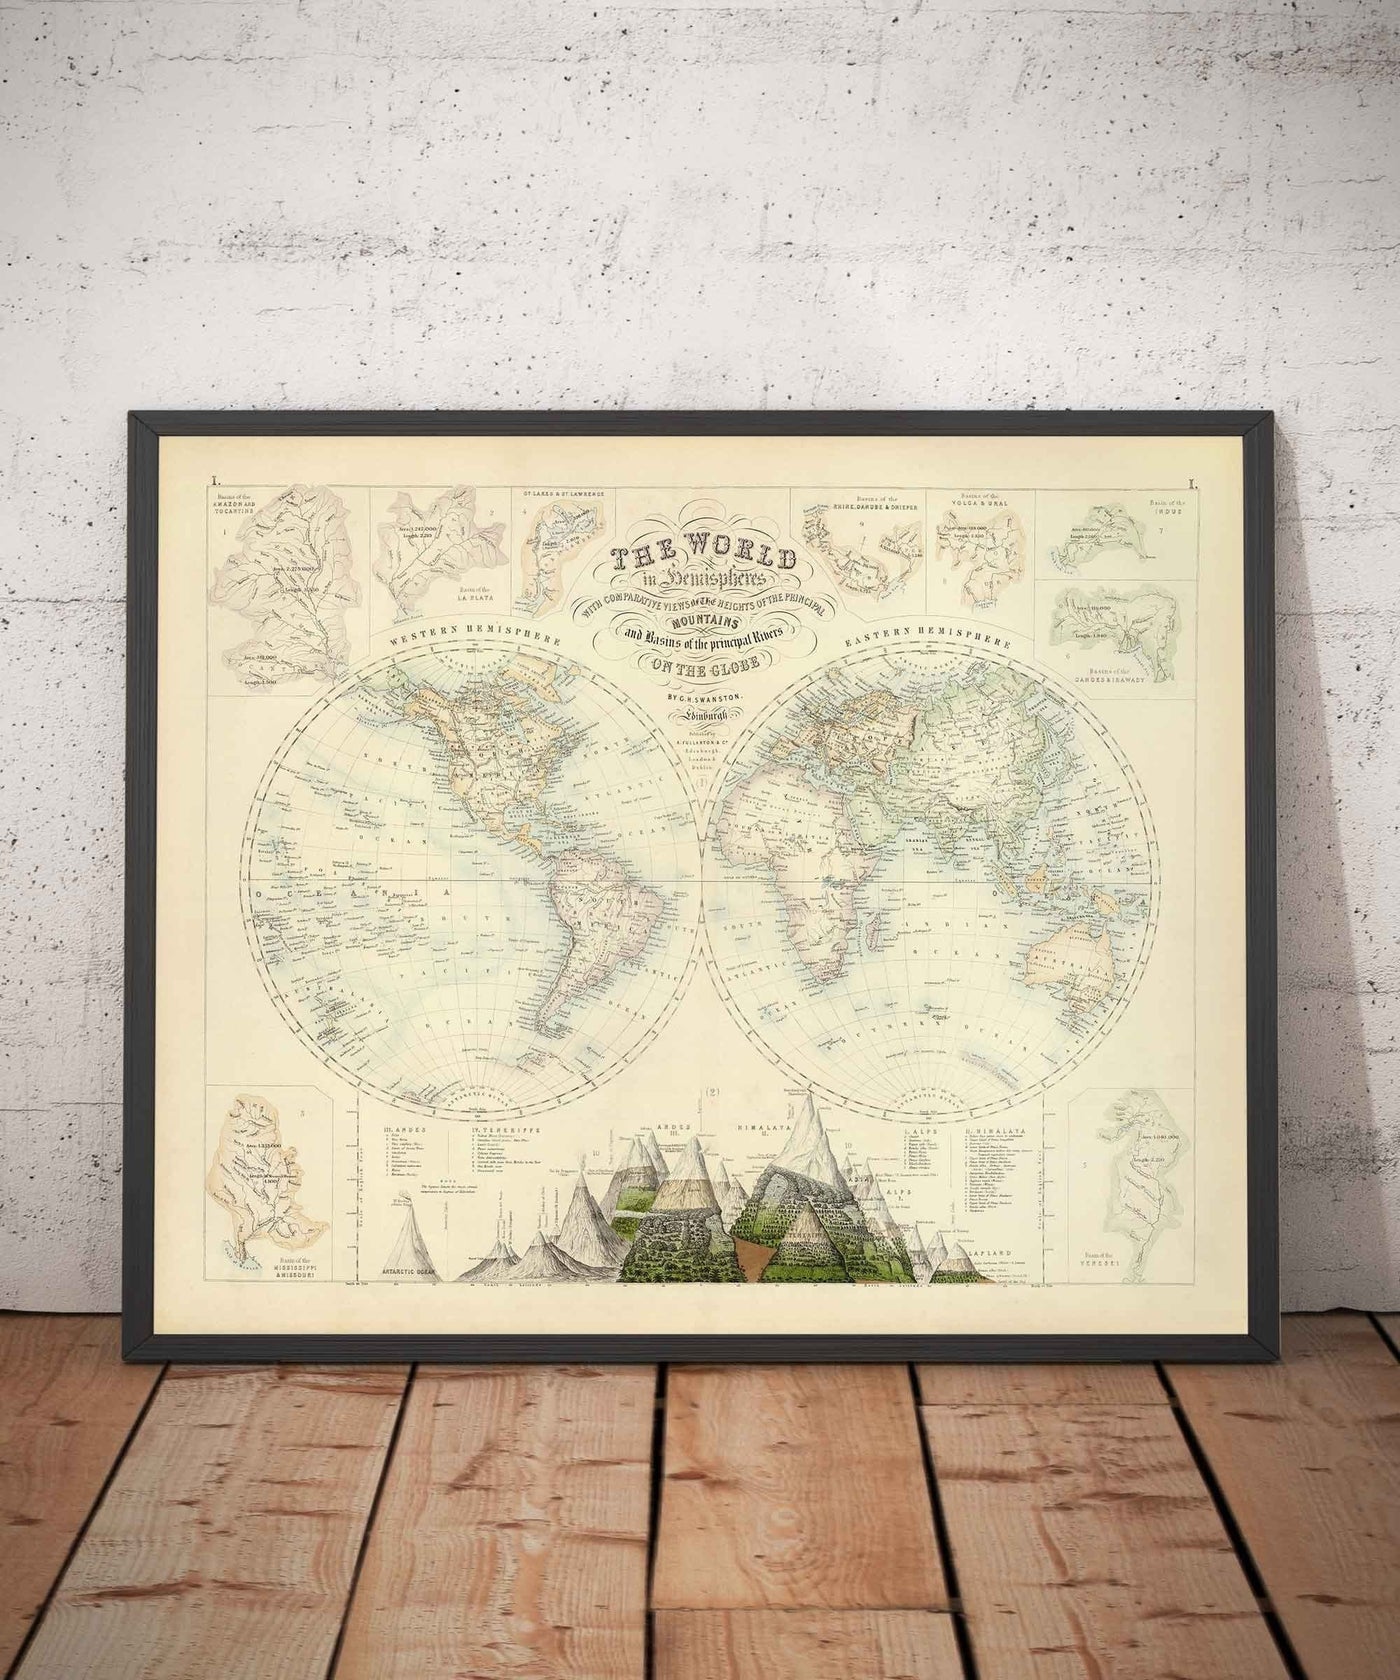 Antiguo mapa del mundo, 1872 por Fullarton - Atlas victoriano de proyección del doble hemisferio, ríos, montañas (¡no hay Everest!)